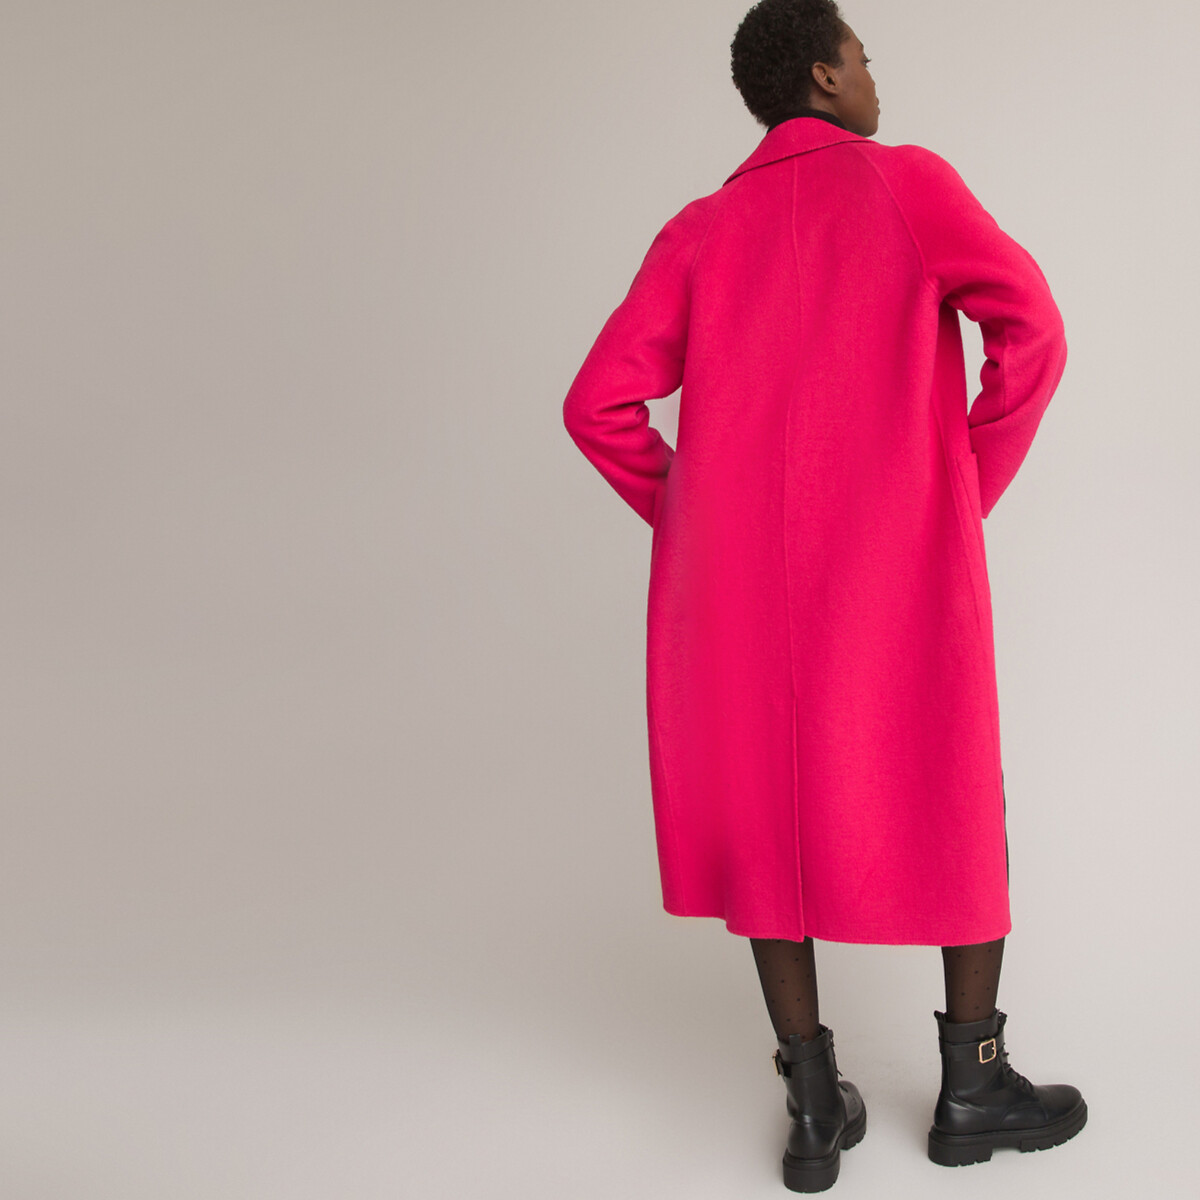 Пальто Из шерстяного драпа 34 (FR) - 40 (RUS) розовый LaRedoute, размер 34 (FR) - 40 (RUS) Пальто Из шерстяного драпа 34 (FR) - 40 (RUS) розовый - фото 4